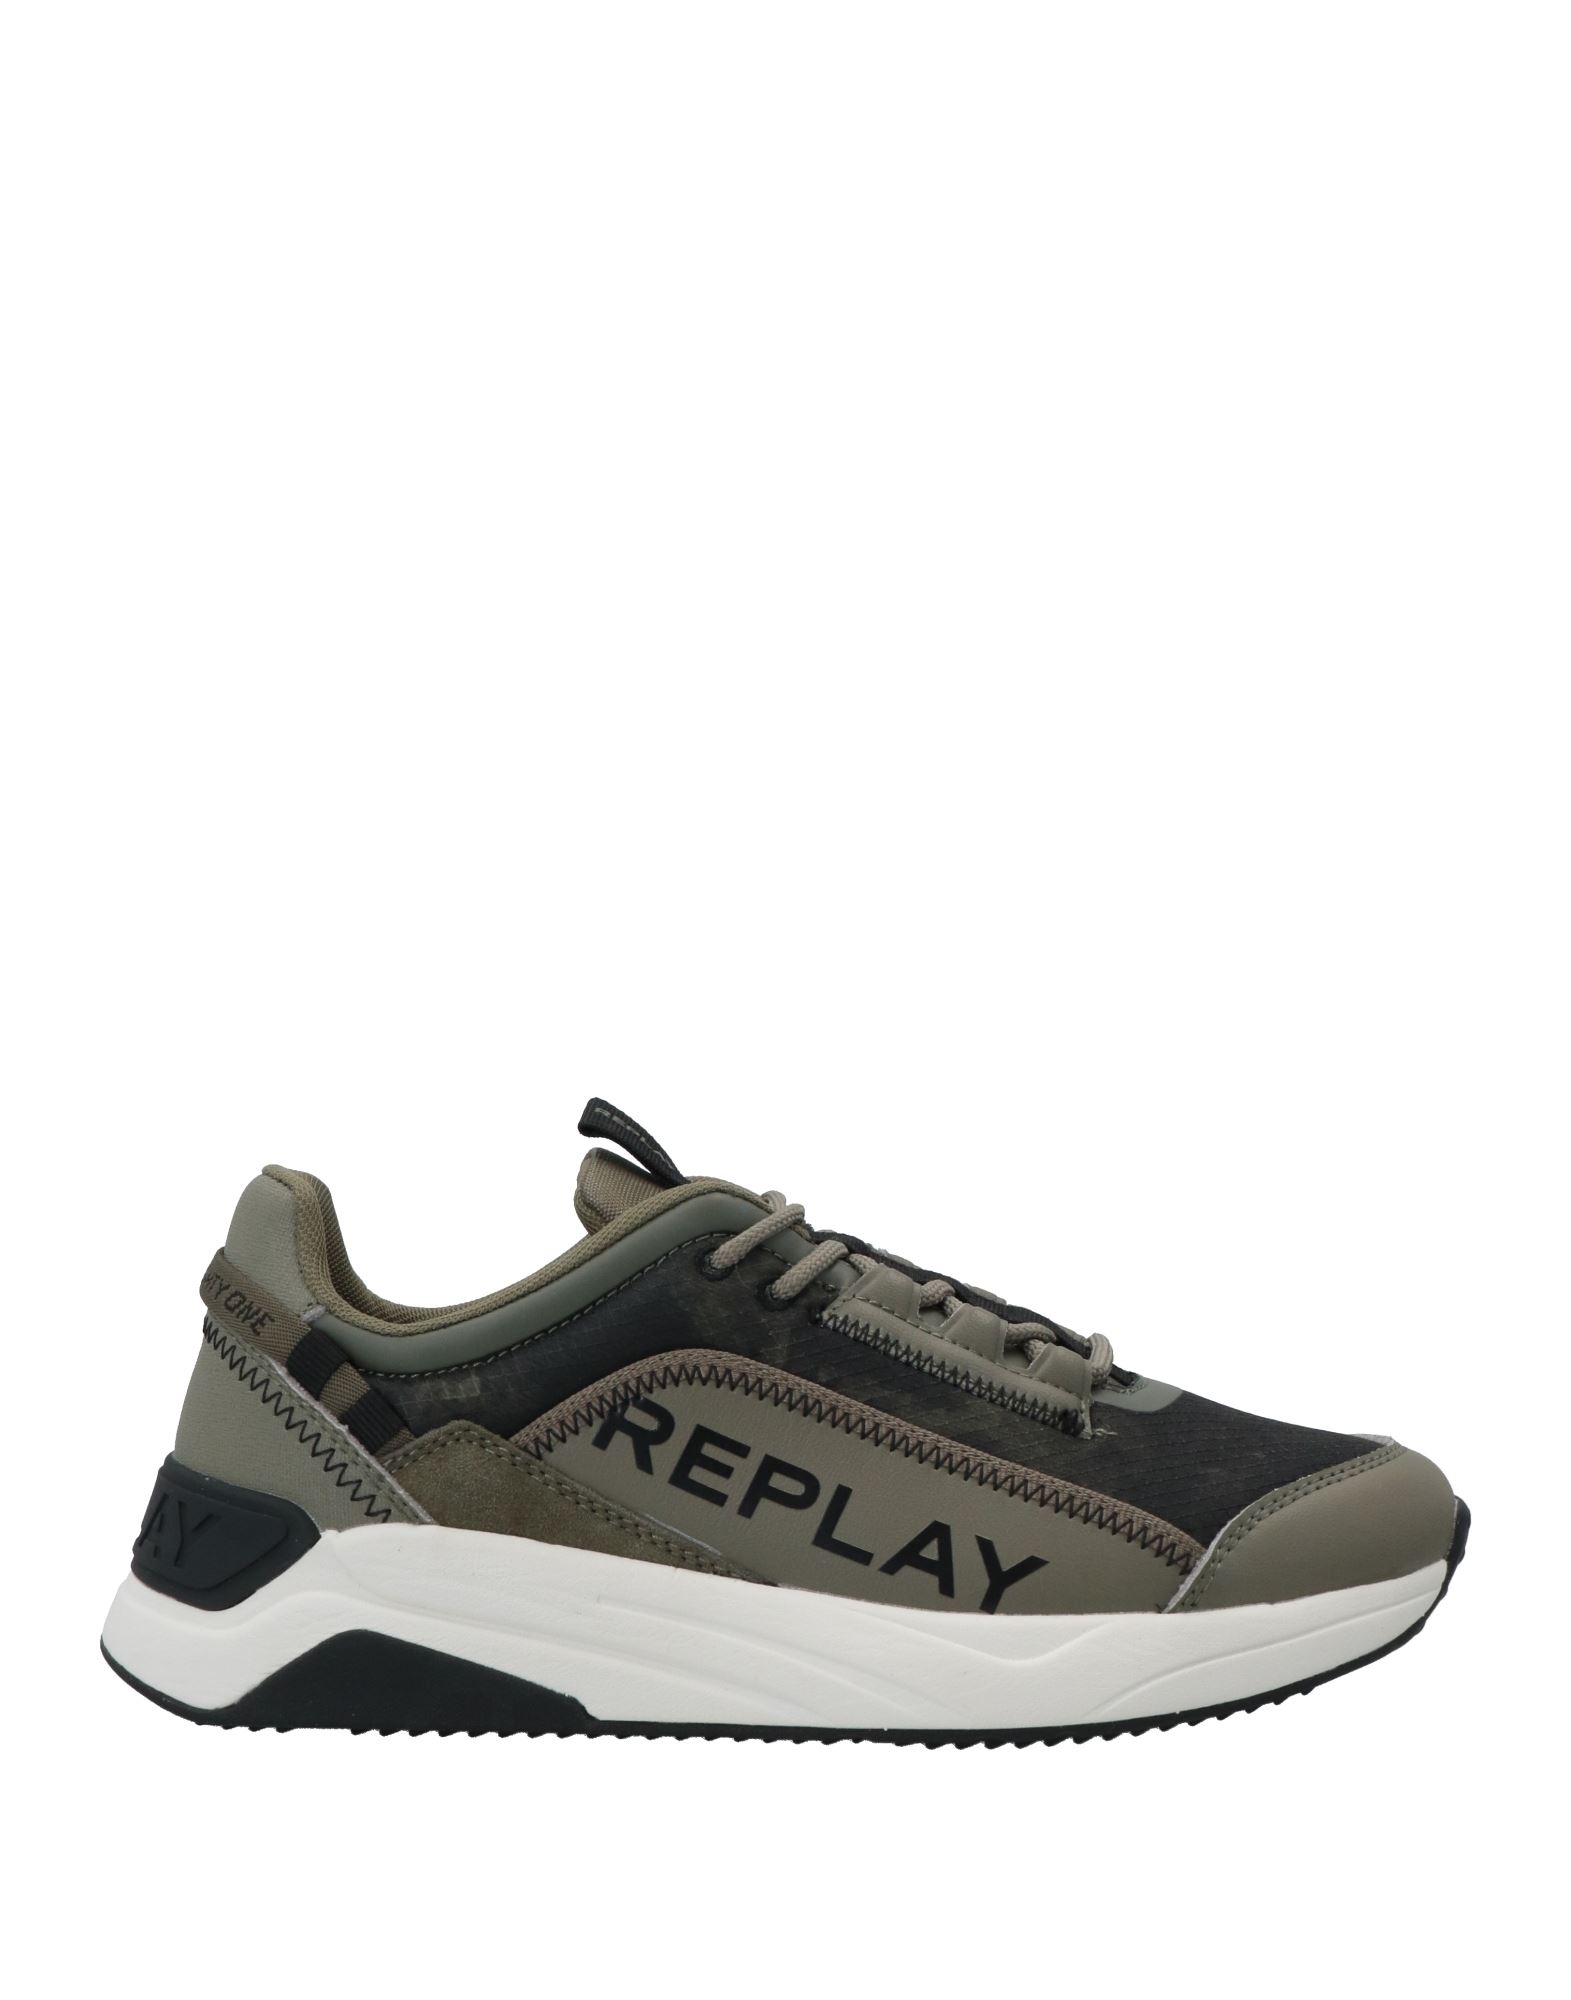 REPLAY, Military green Men's Sneakers